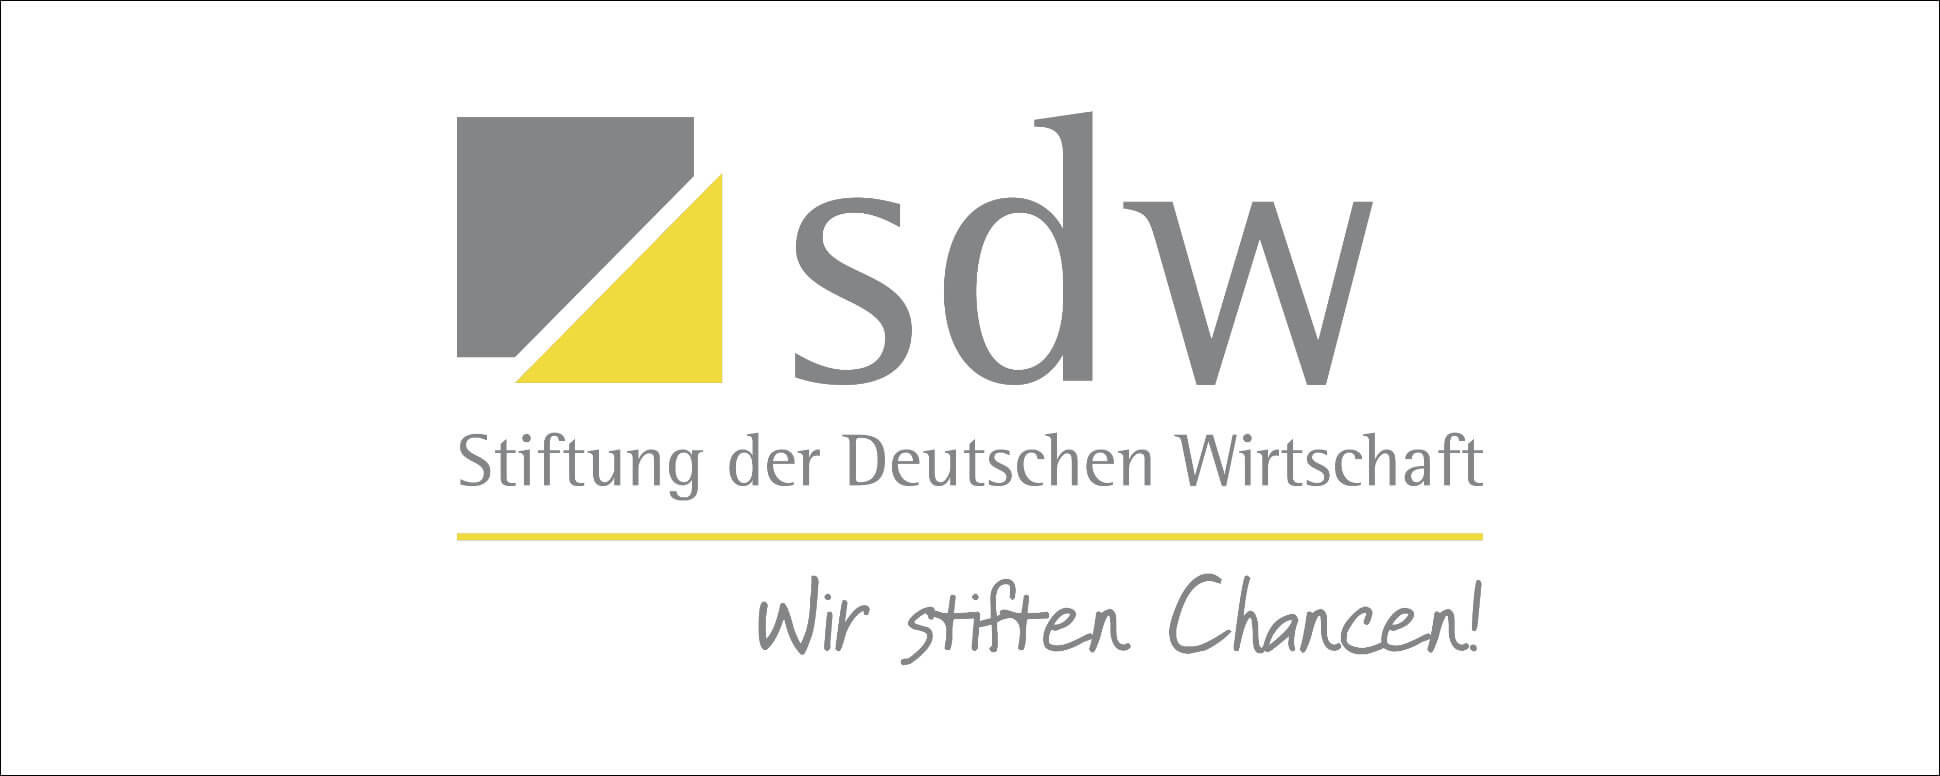 Stiftung_der_Deutschen_Wirtschaft_Slide